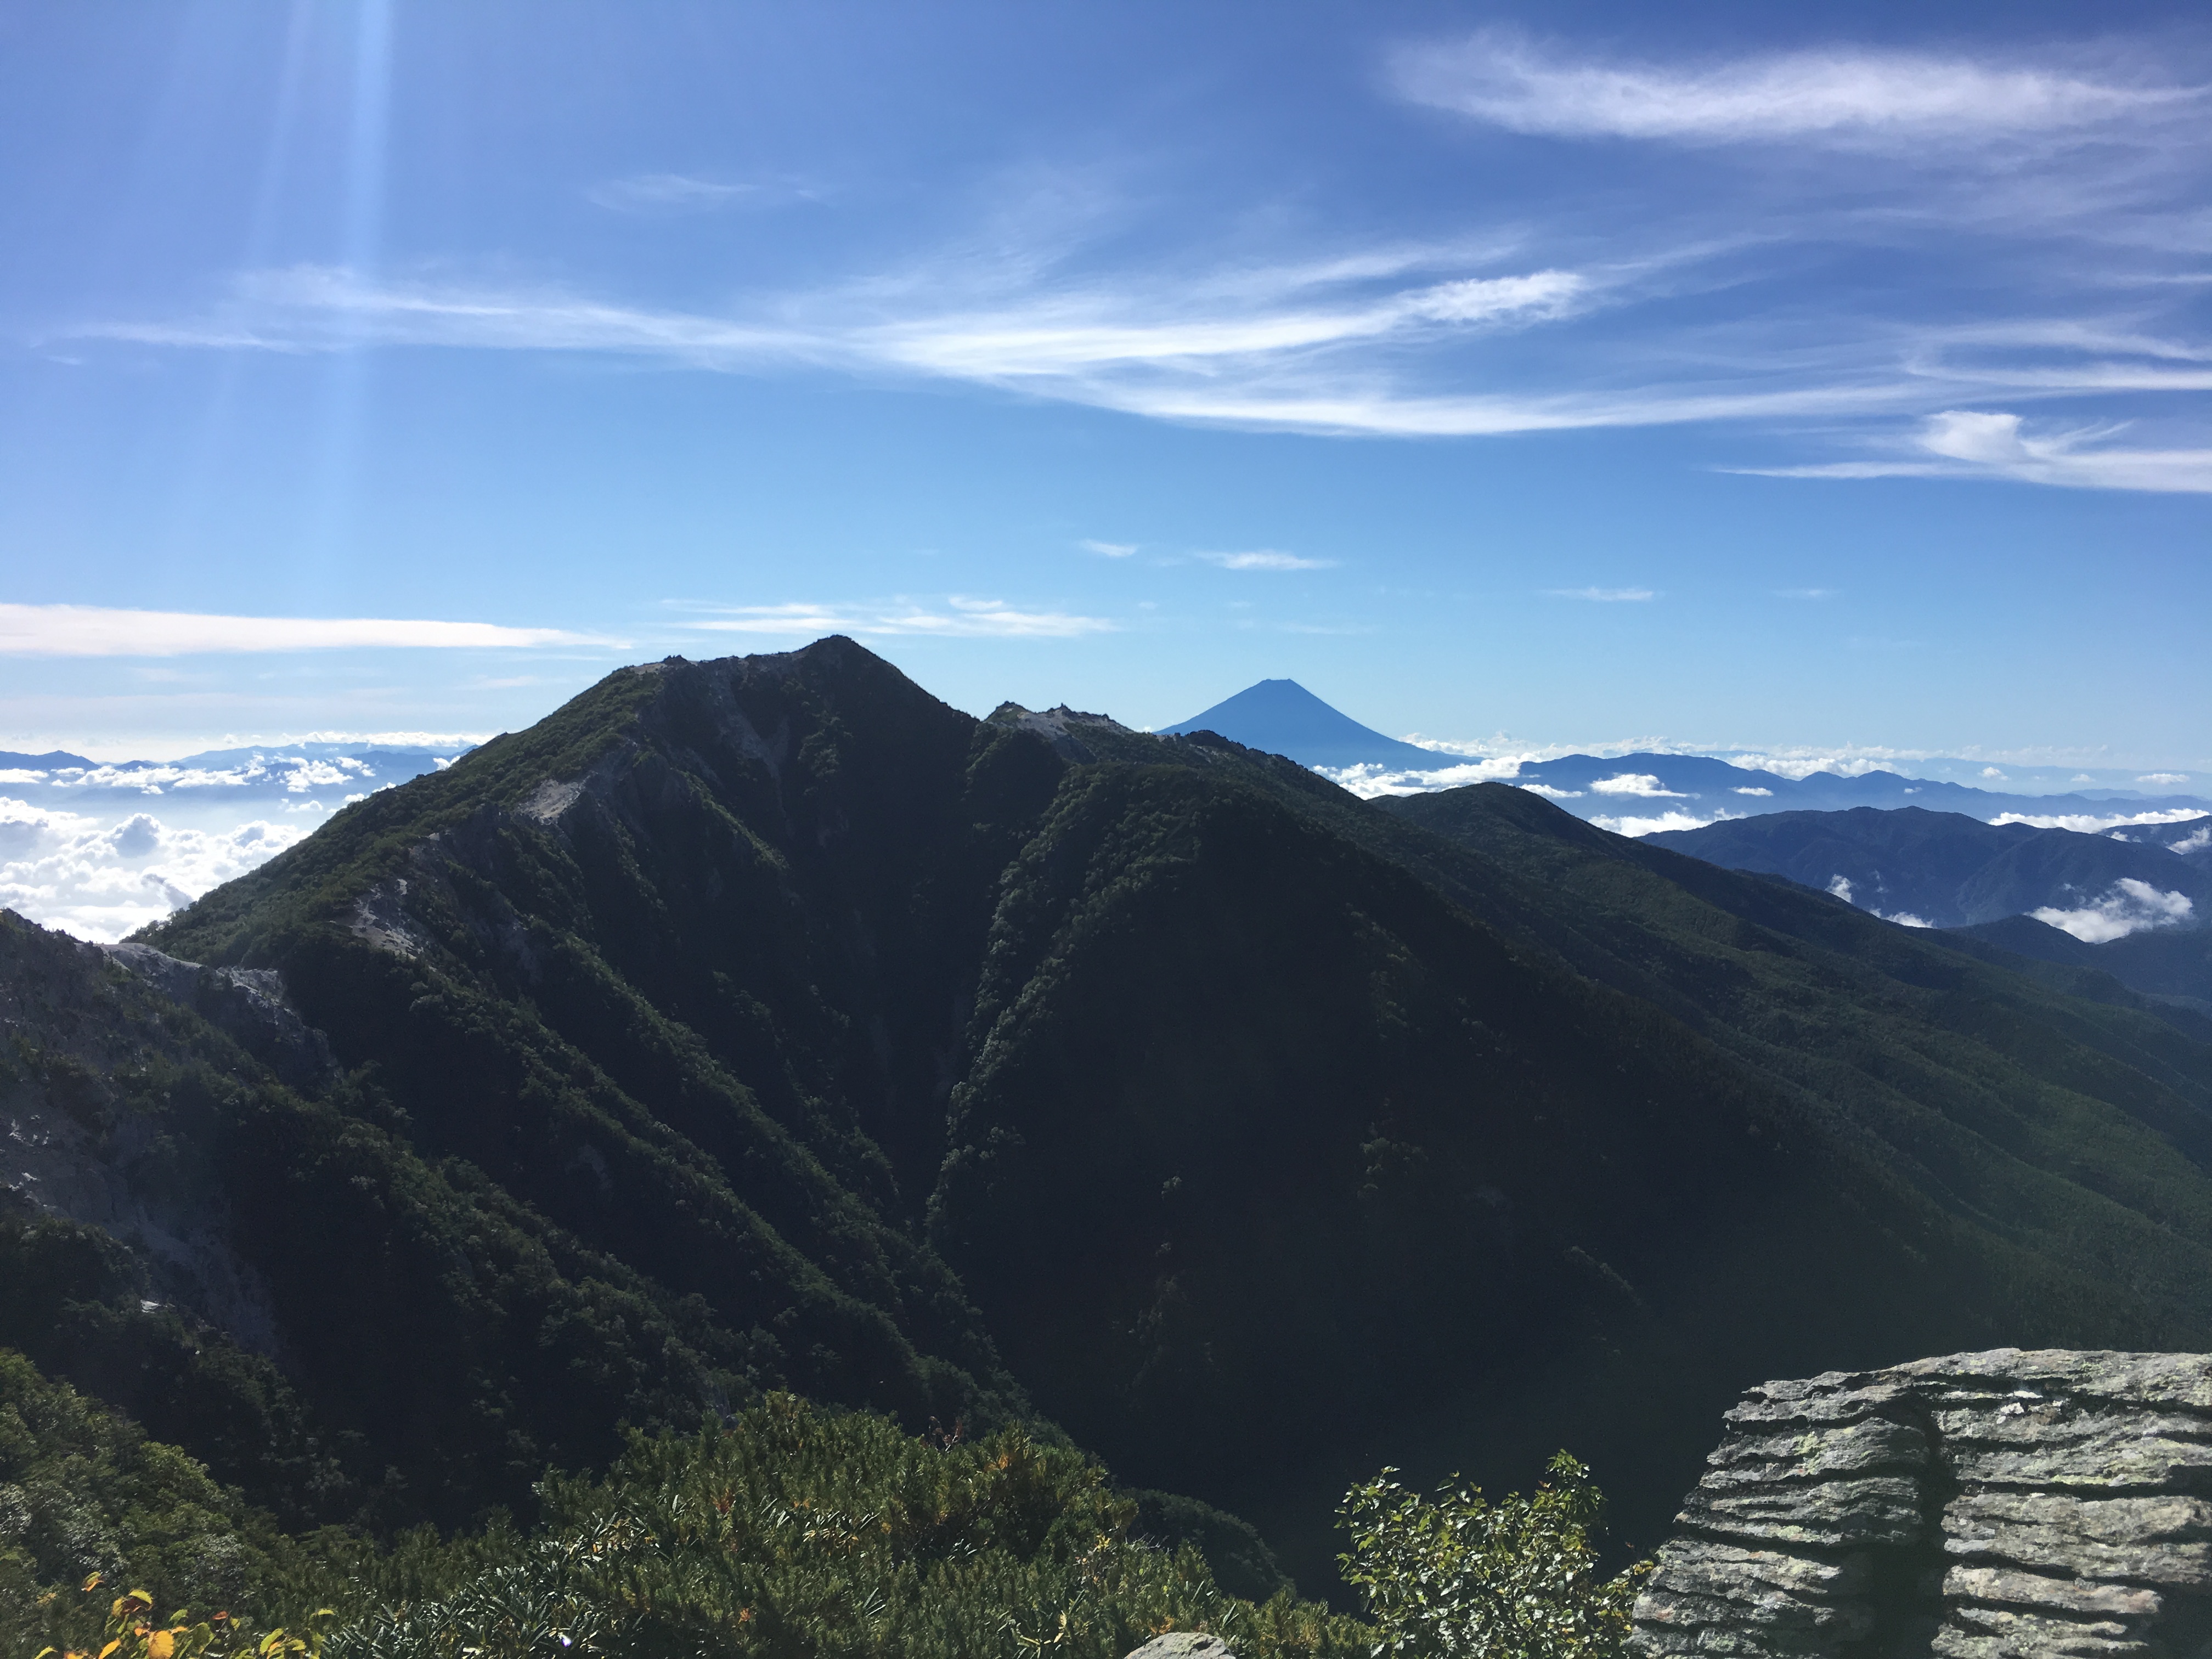 鳳凰山 白砂青松の景観美と大展望を誇る峰 ヤマレコ